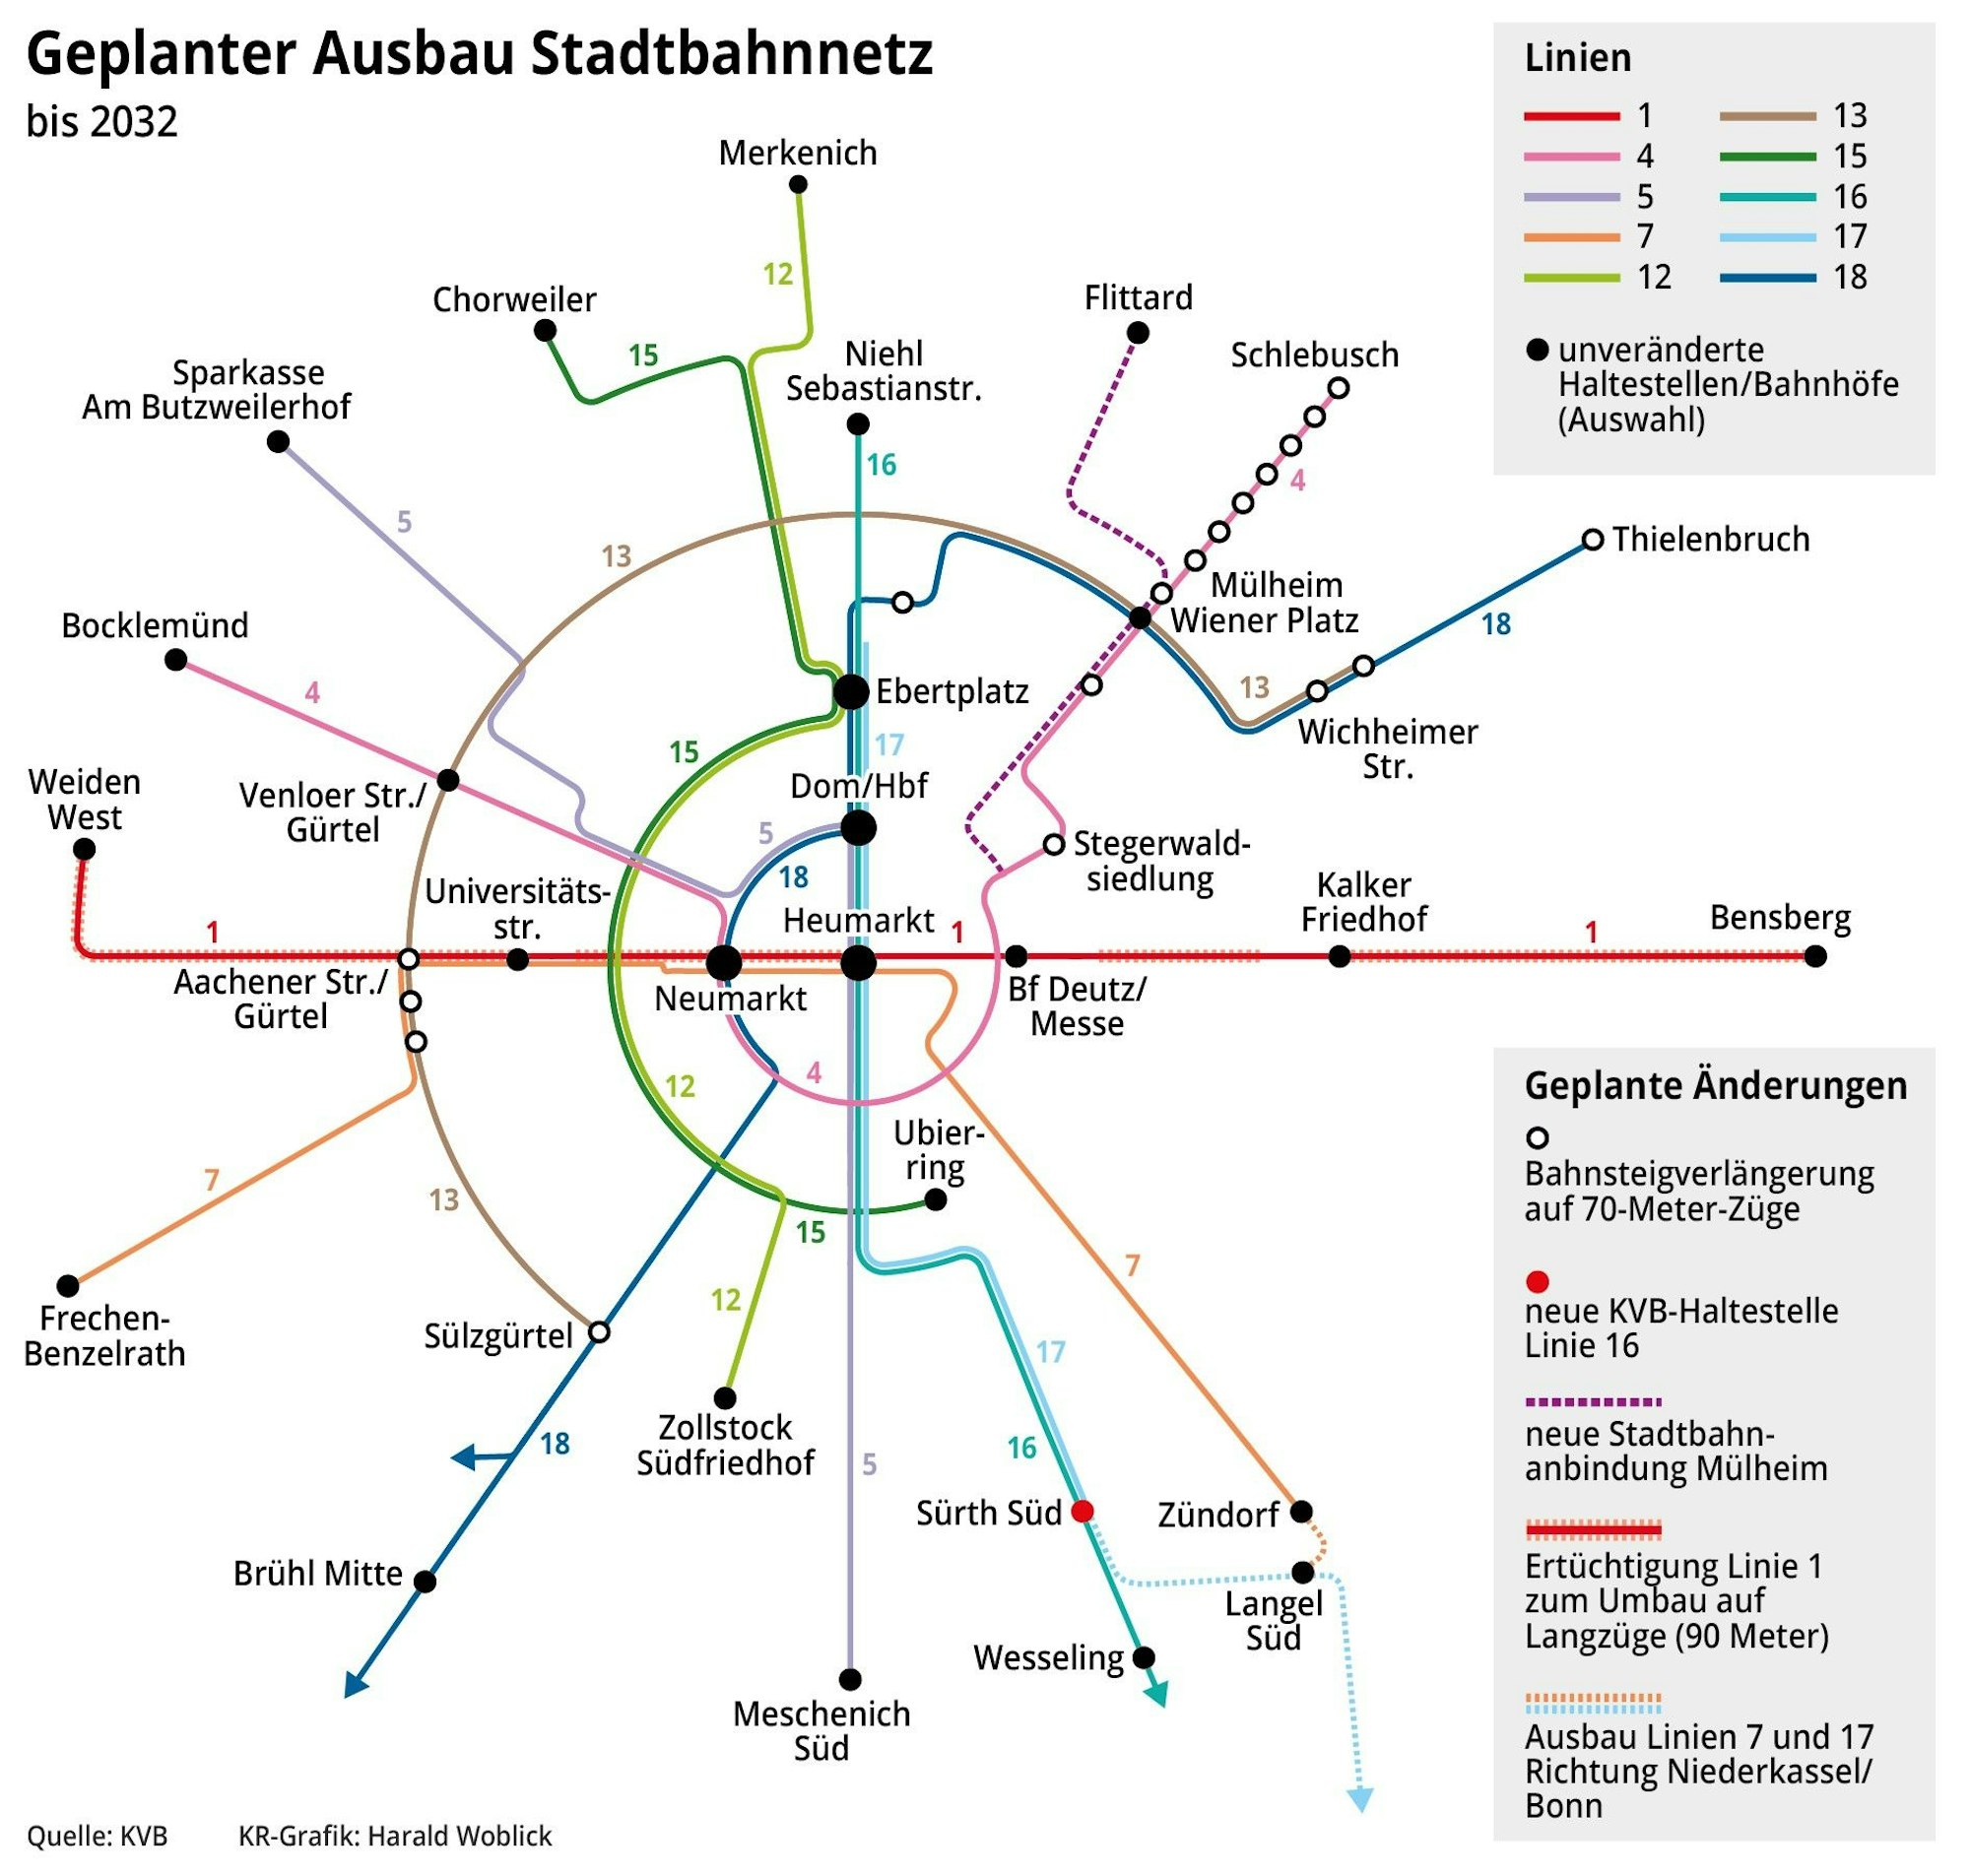 Grafik zum geplanten Ausbau des Kölner Stadtbahnnetzes